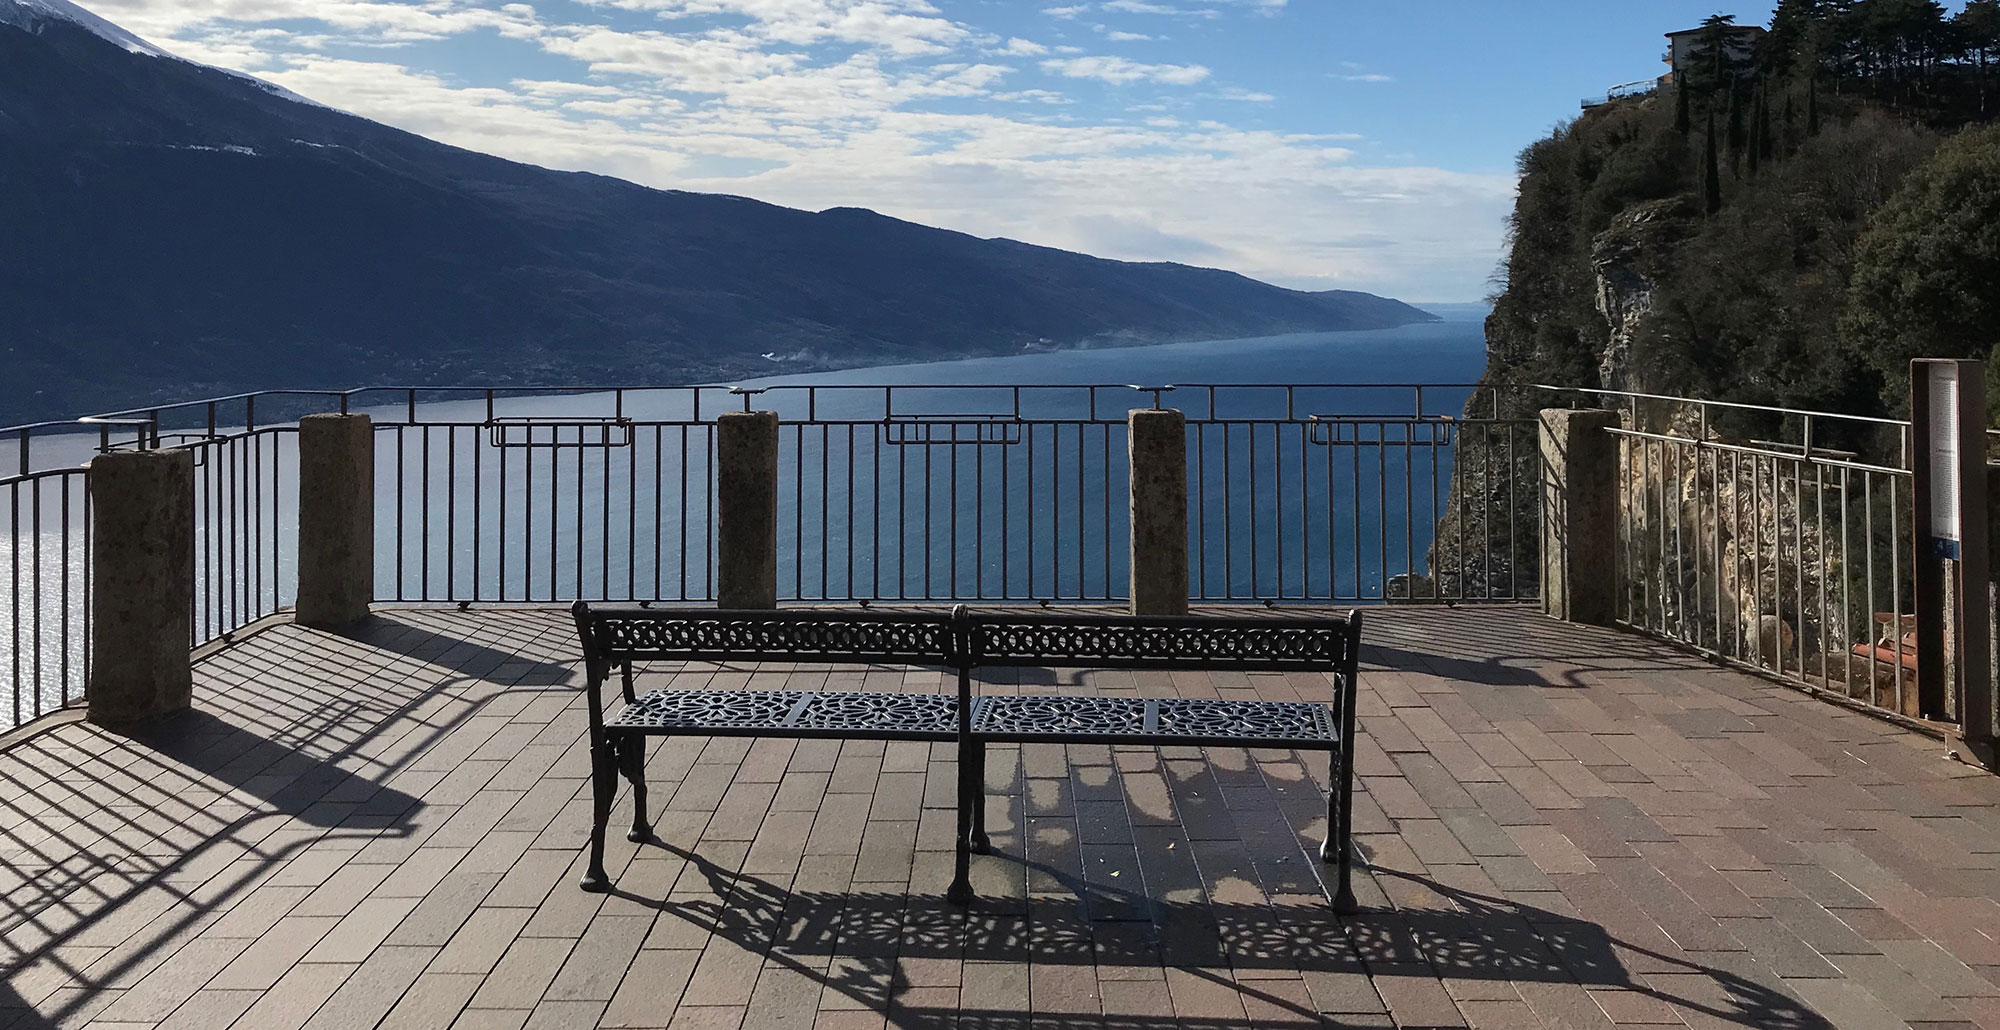 Terrazza panoramica sul lago di Garda - Foto: Proloco Tremosine